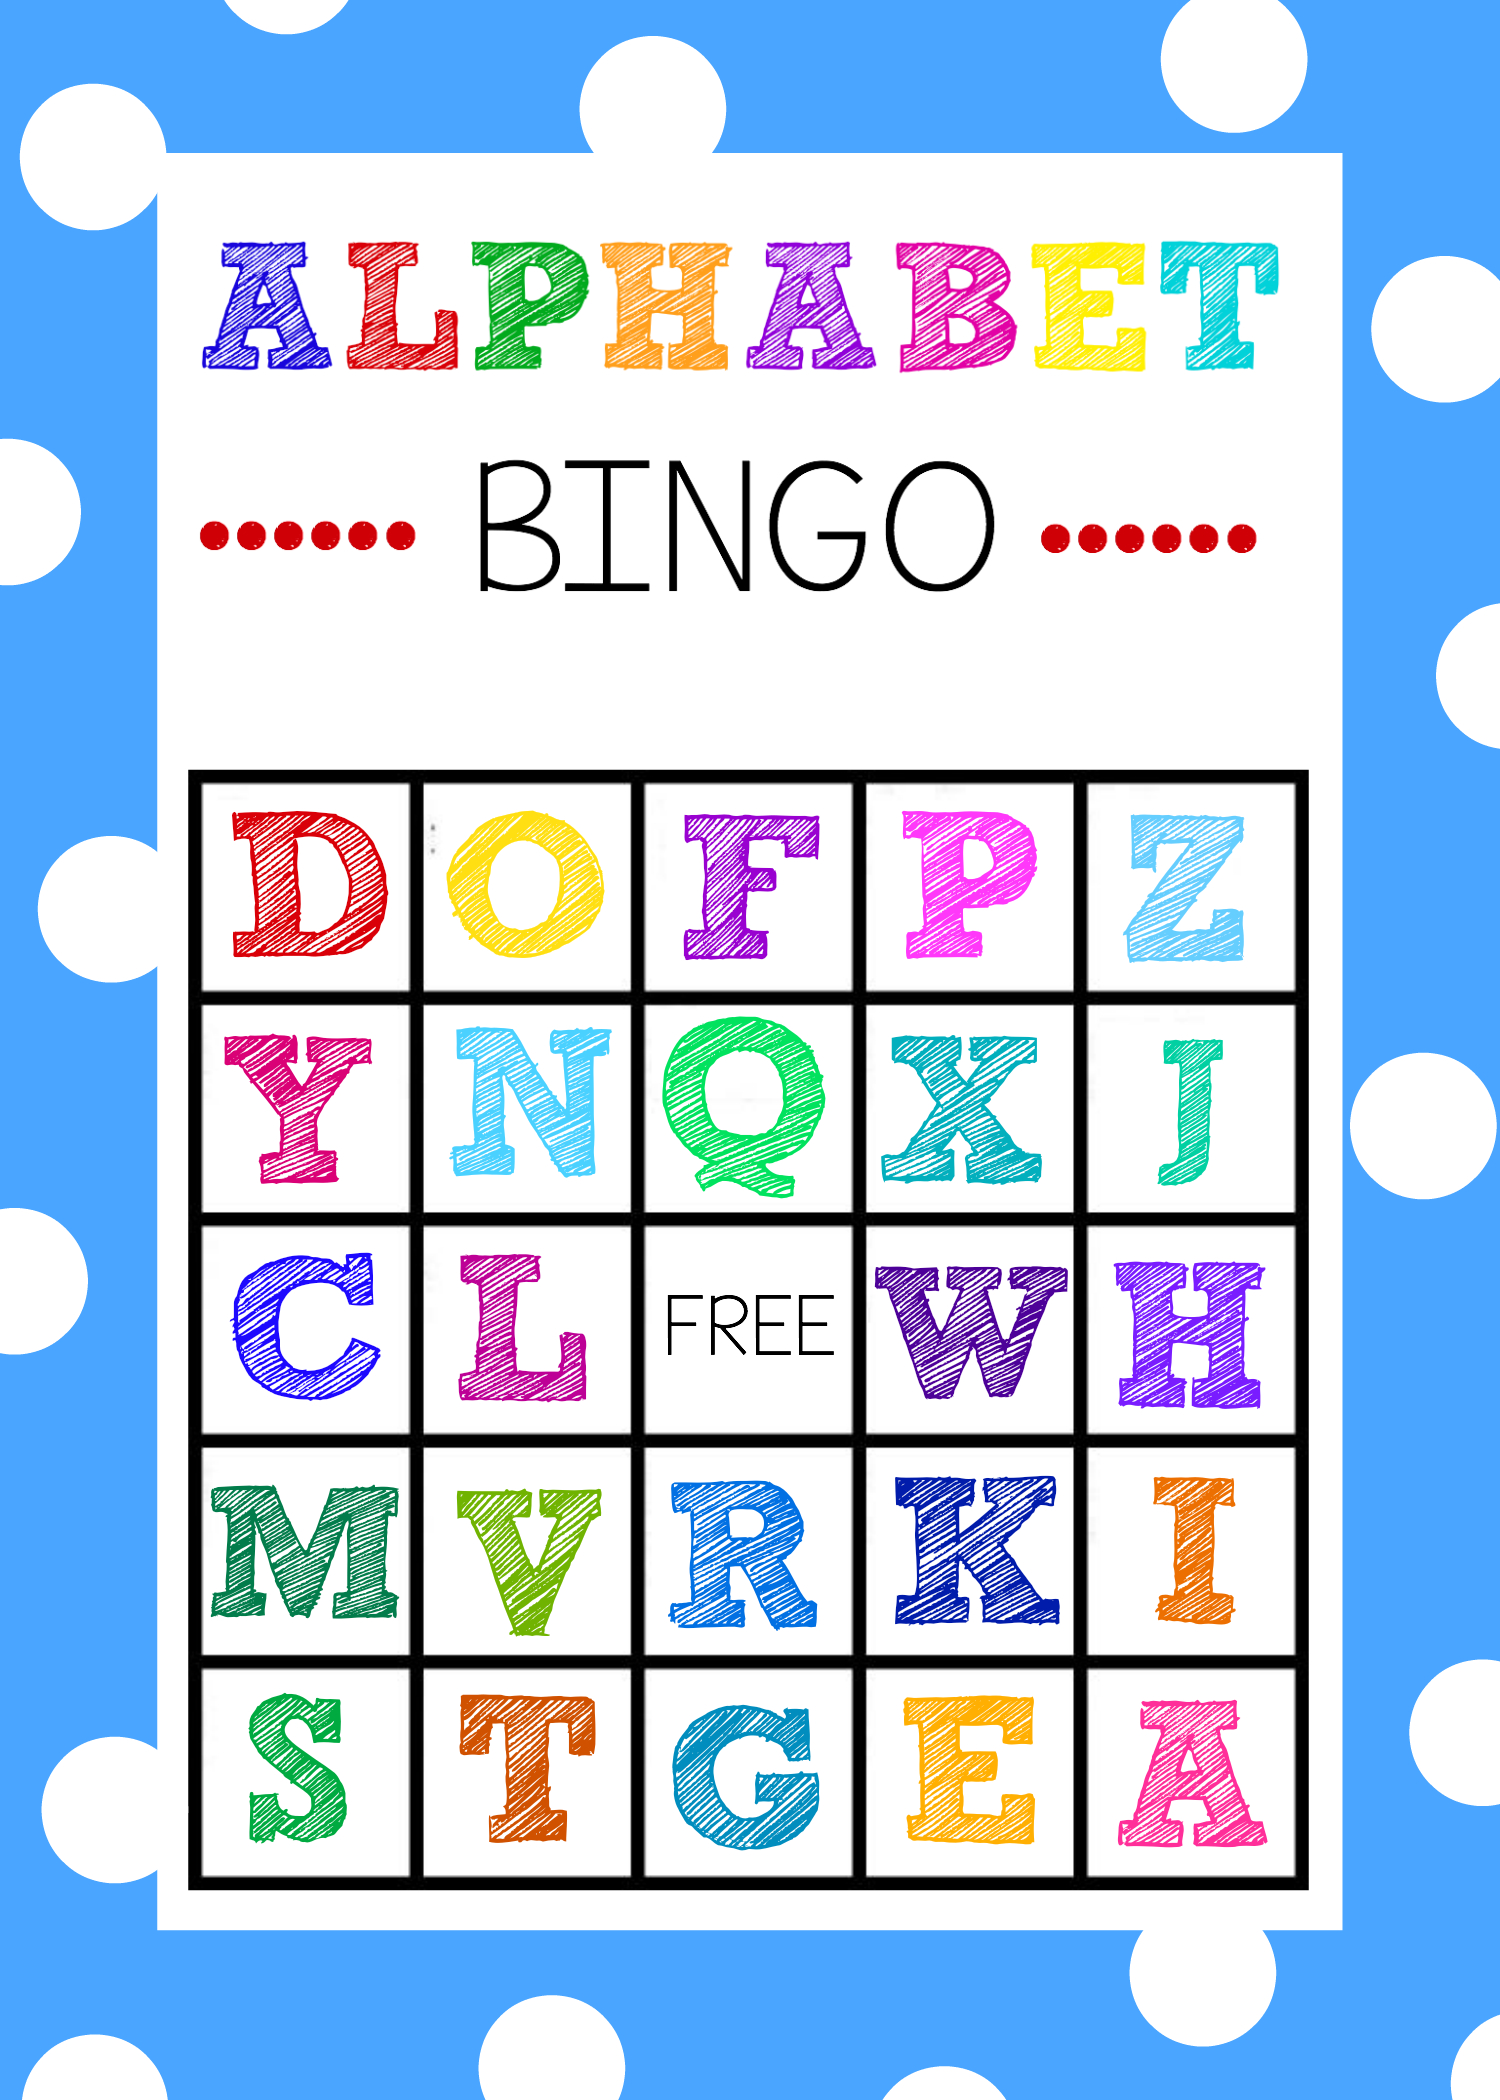 Free Printable Alphabet Bingo Game | Abc Games | Pinterest - Free Printable Alphabet Bingo Cards